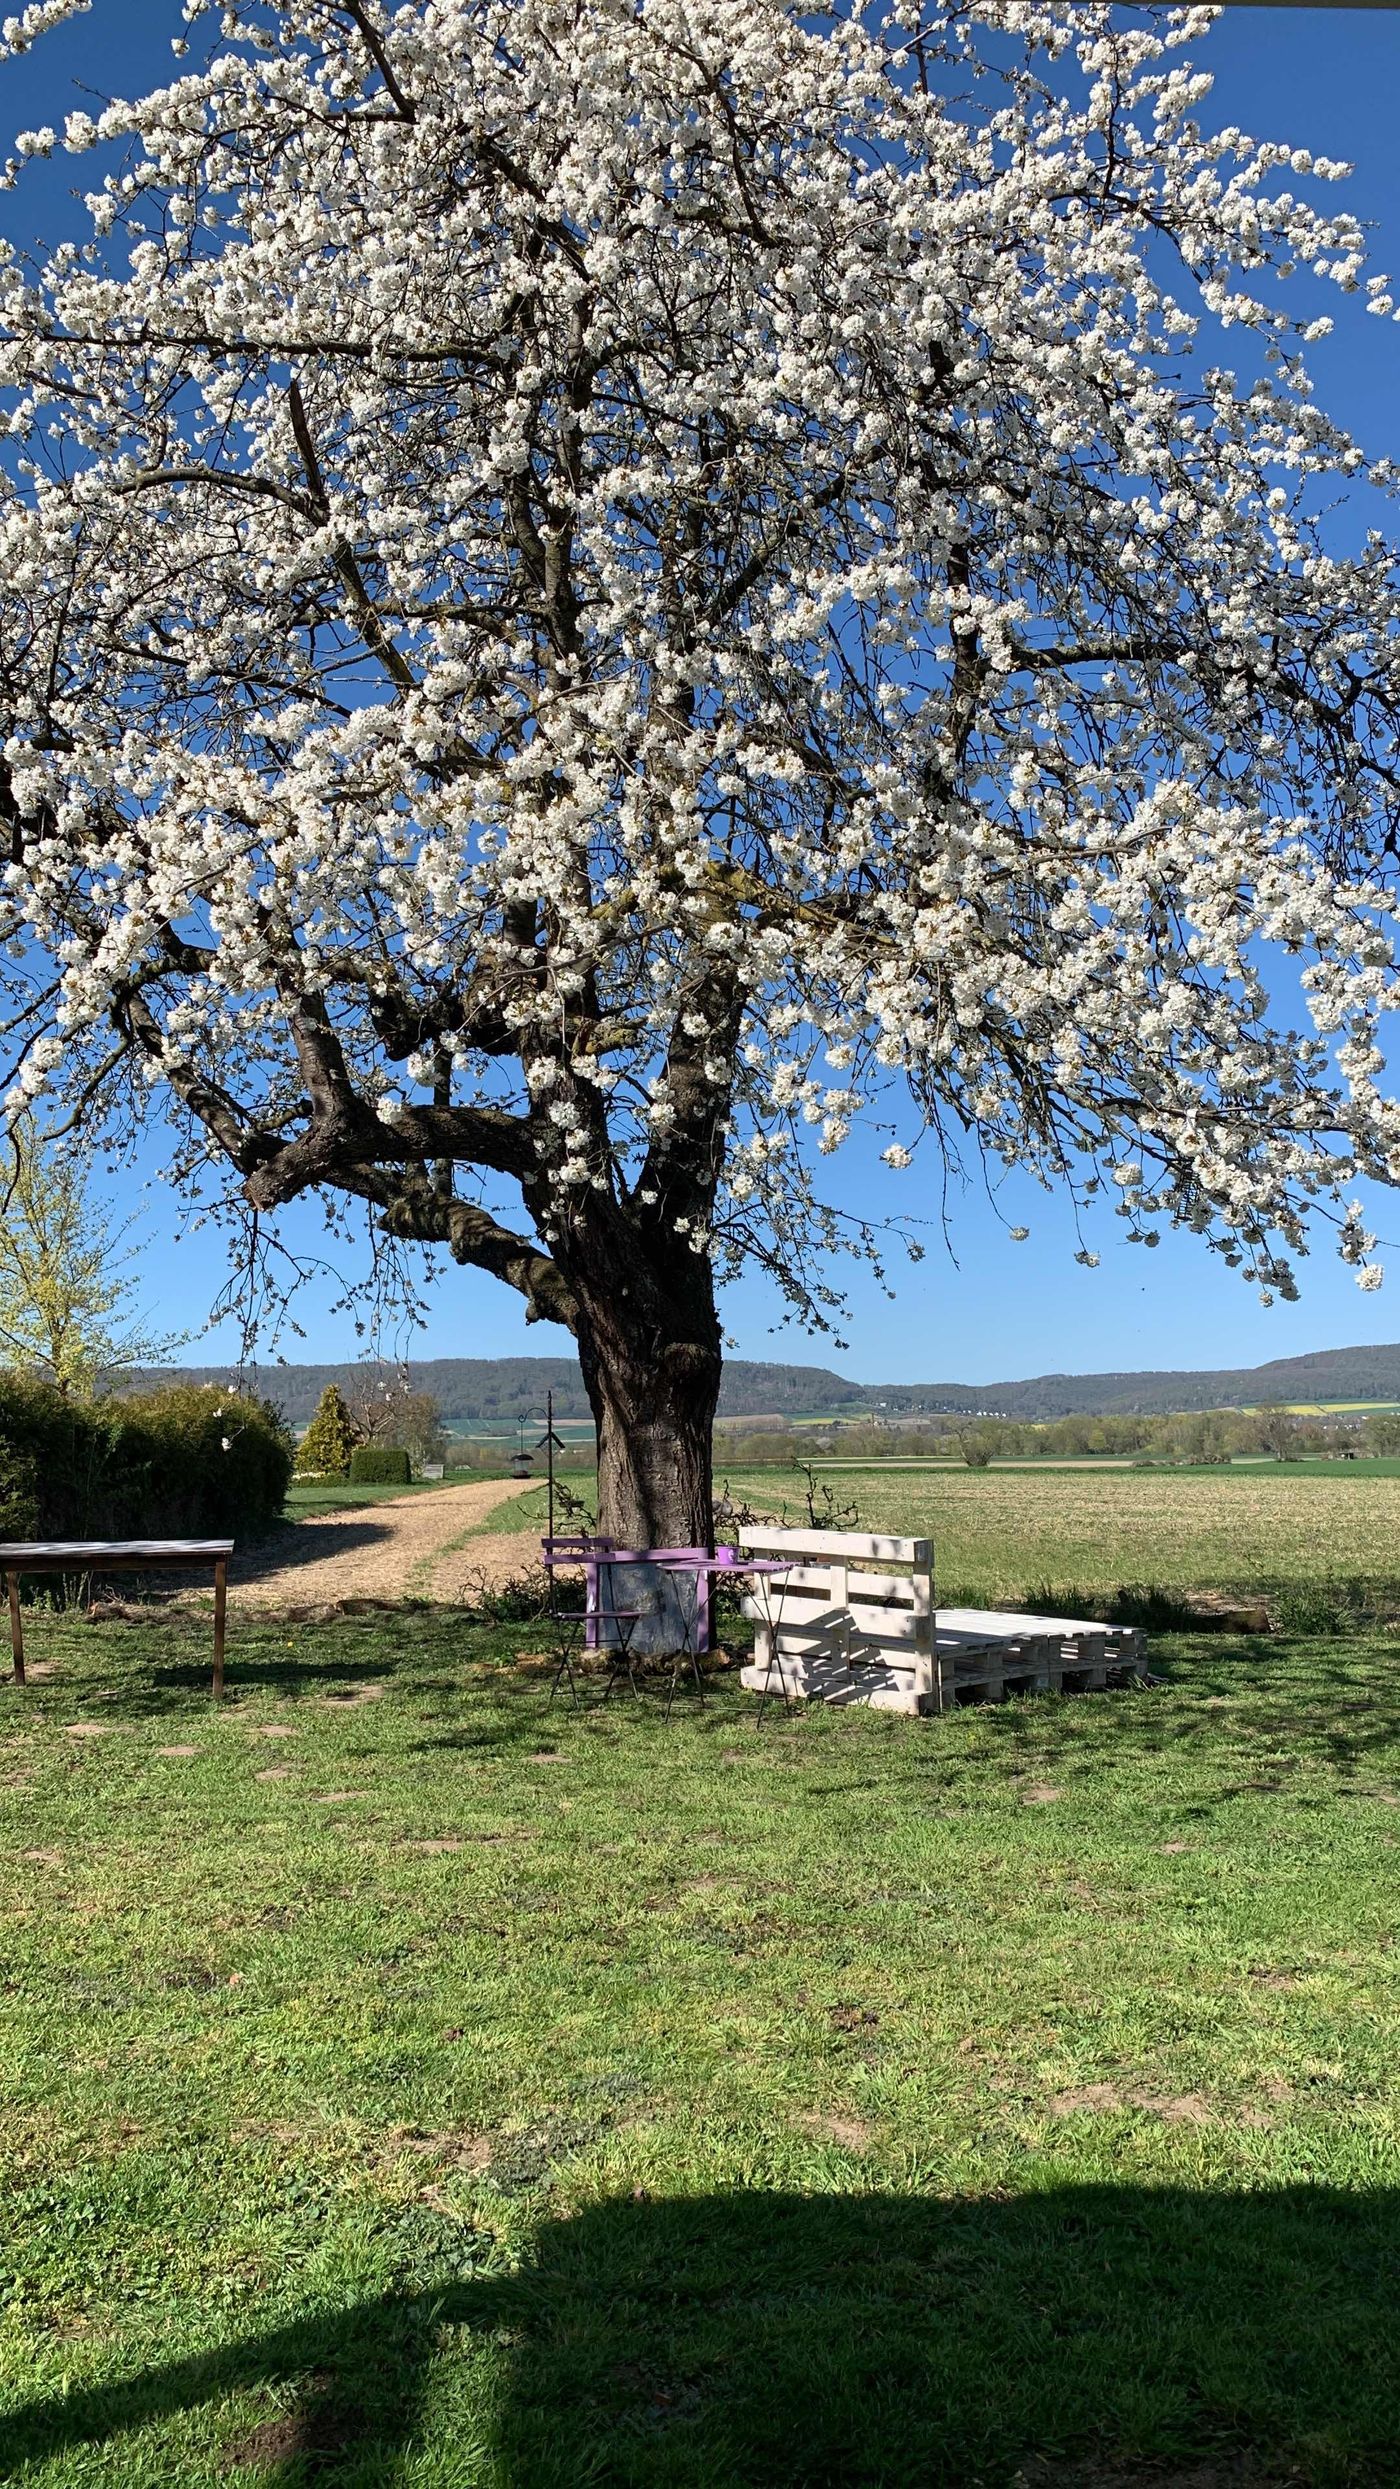 Kirschblüten